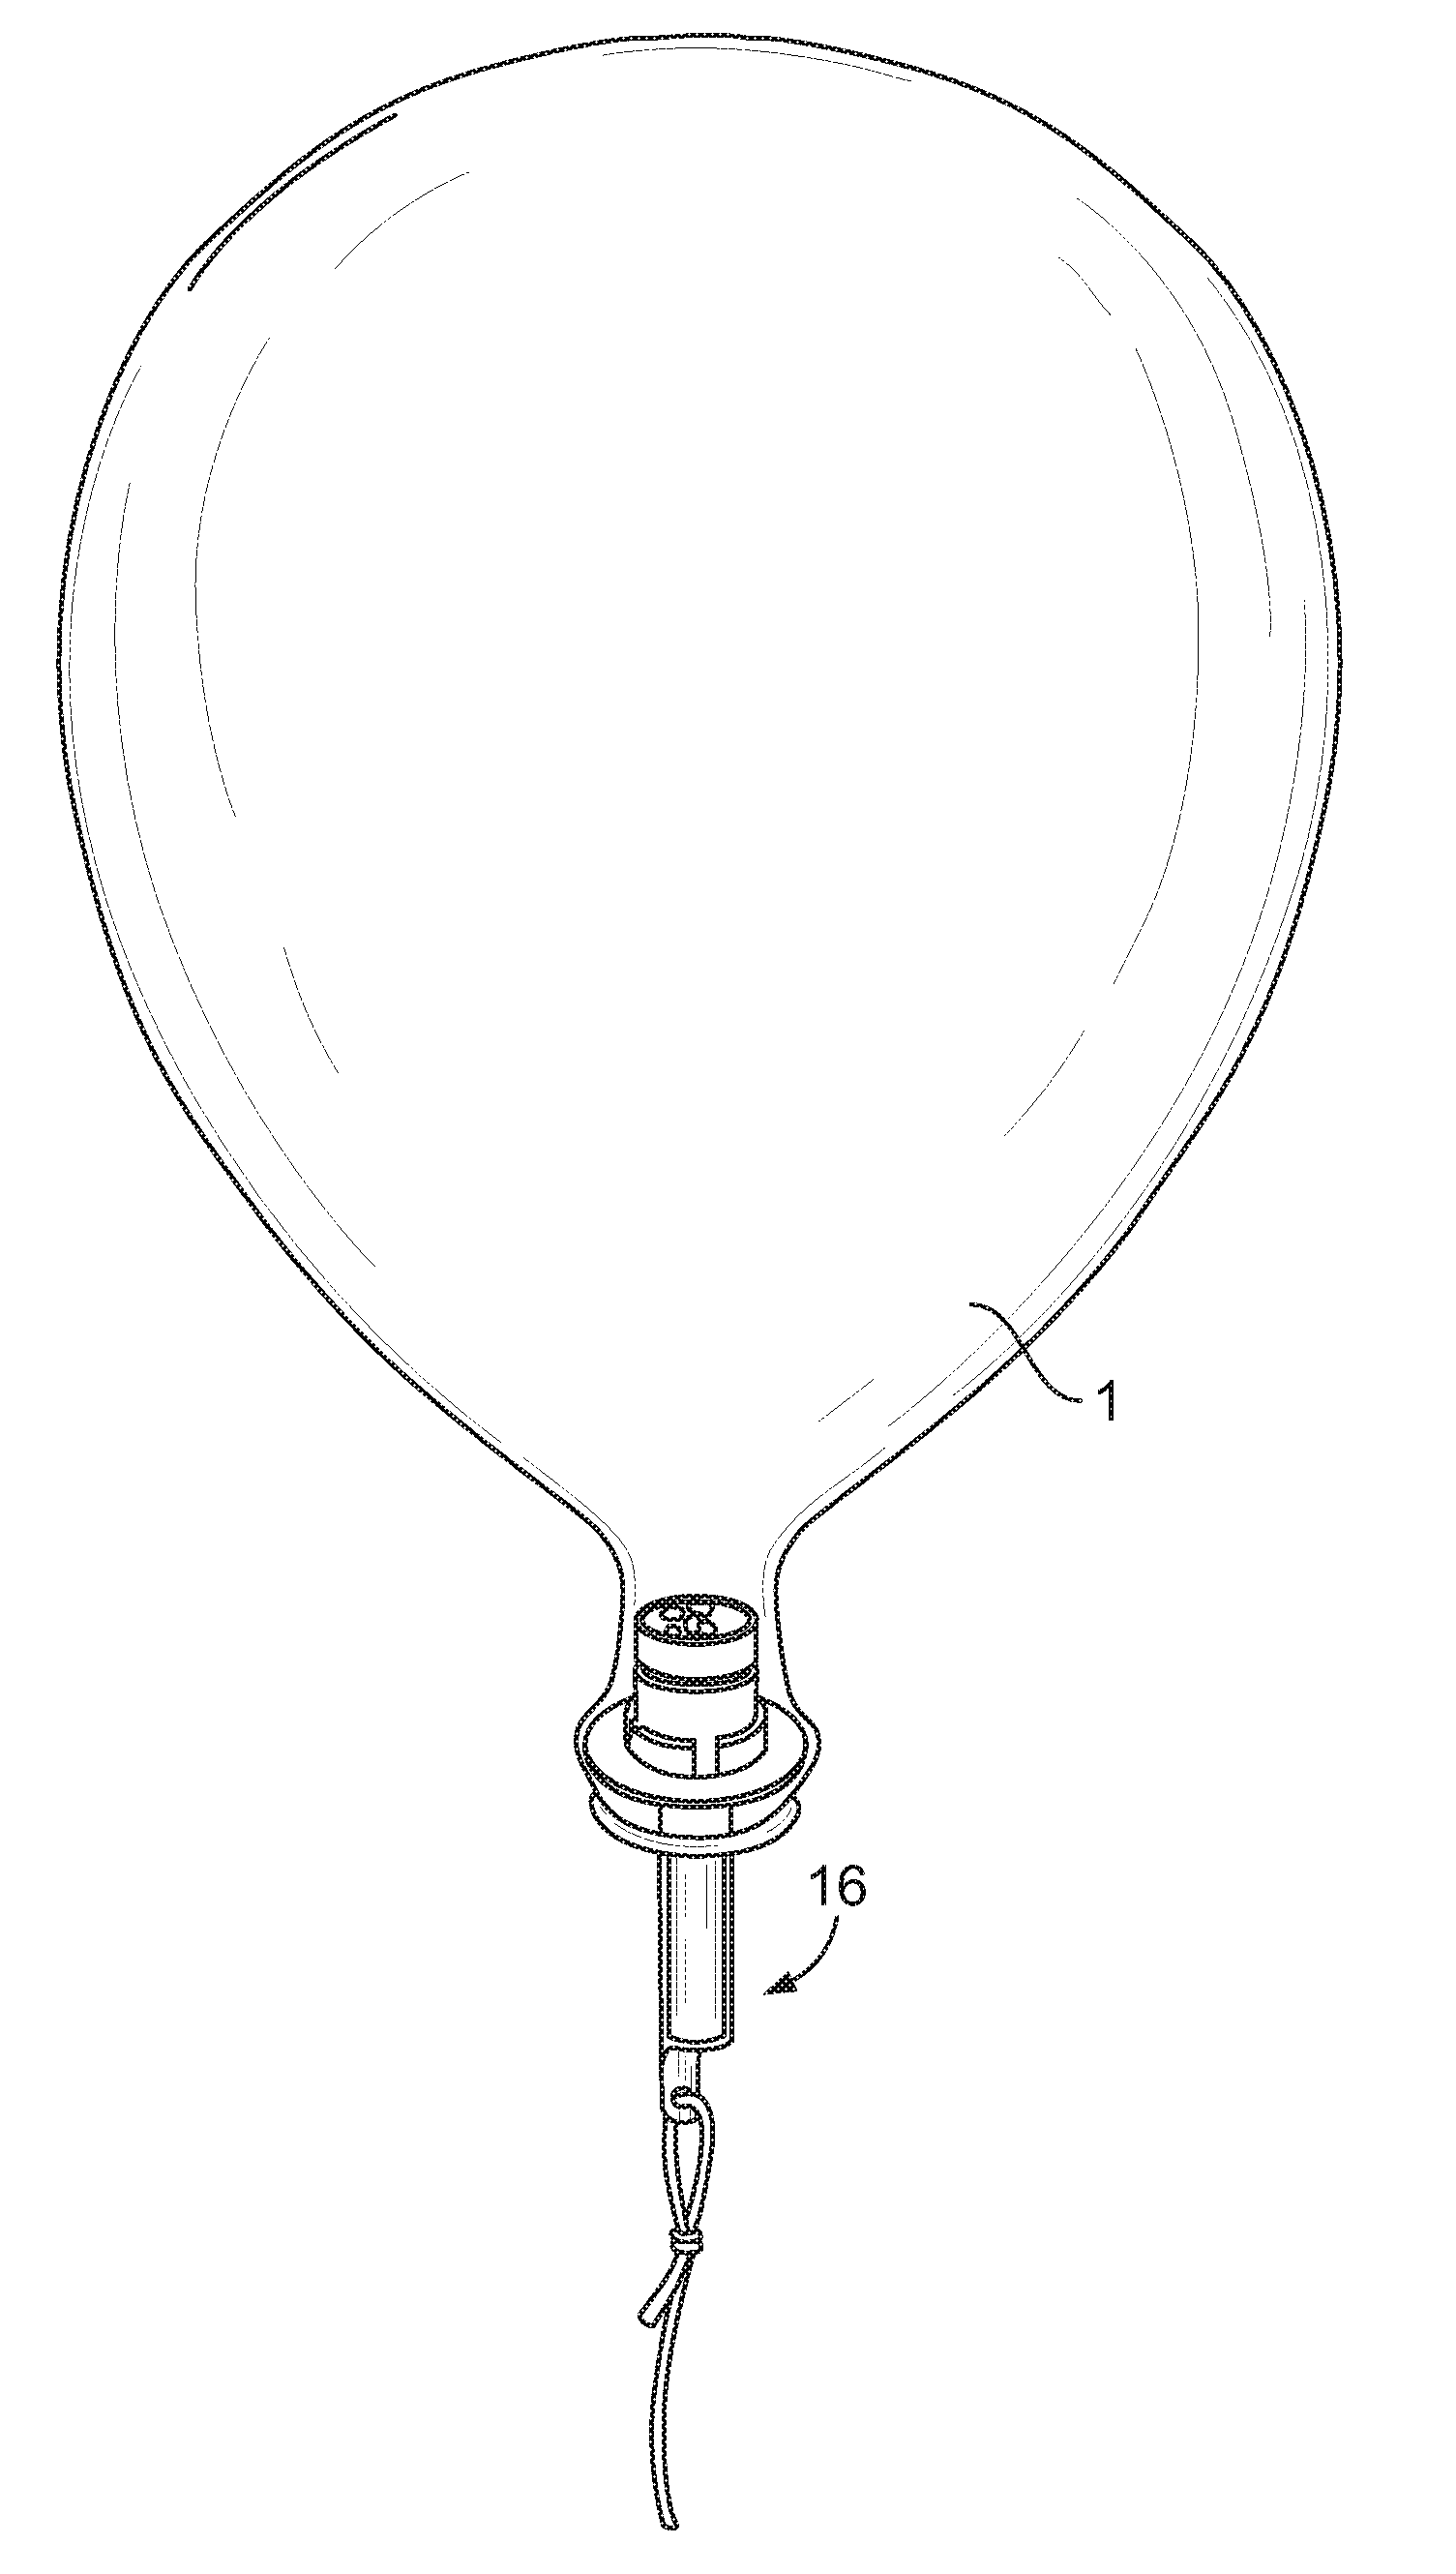 Illuminated toy balloon with stand